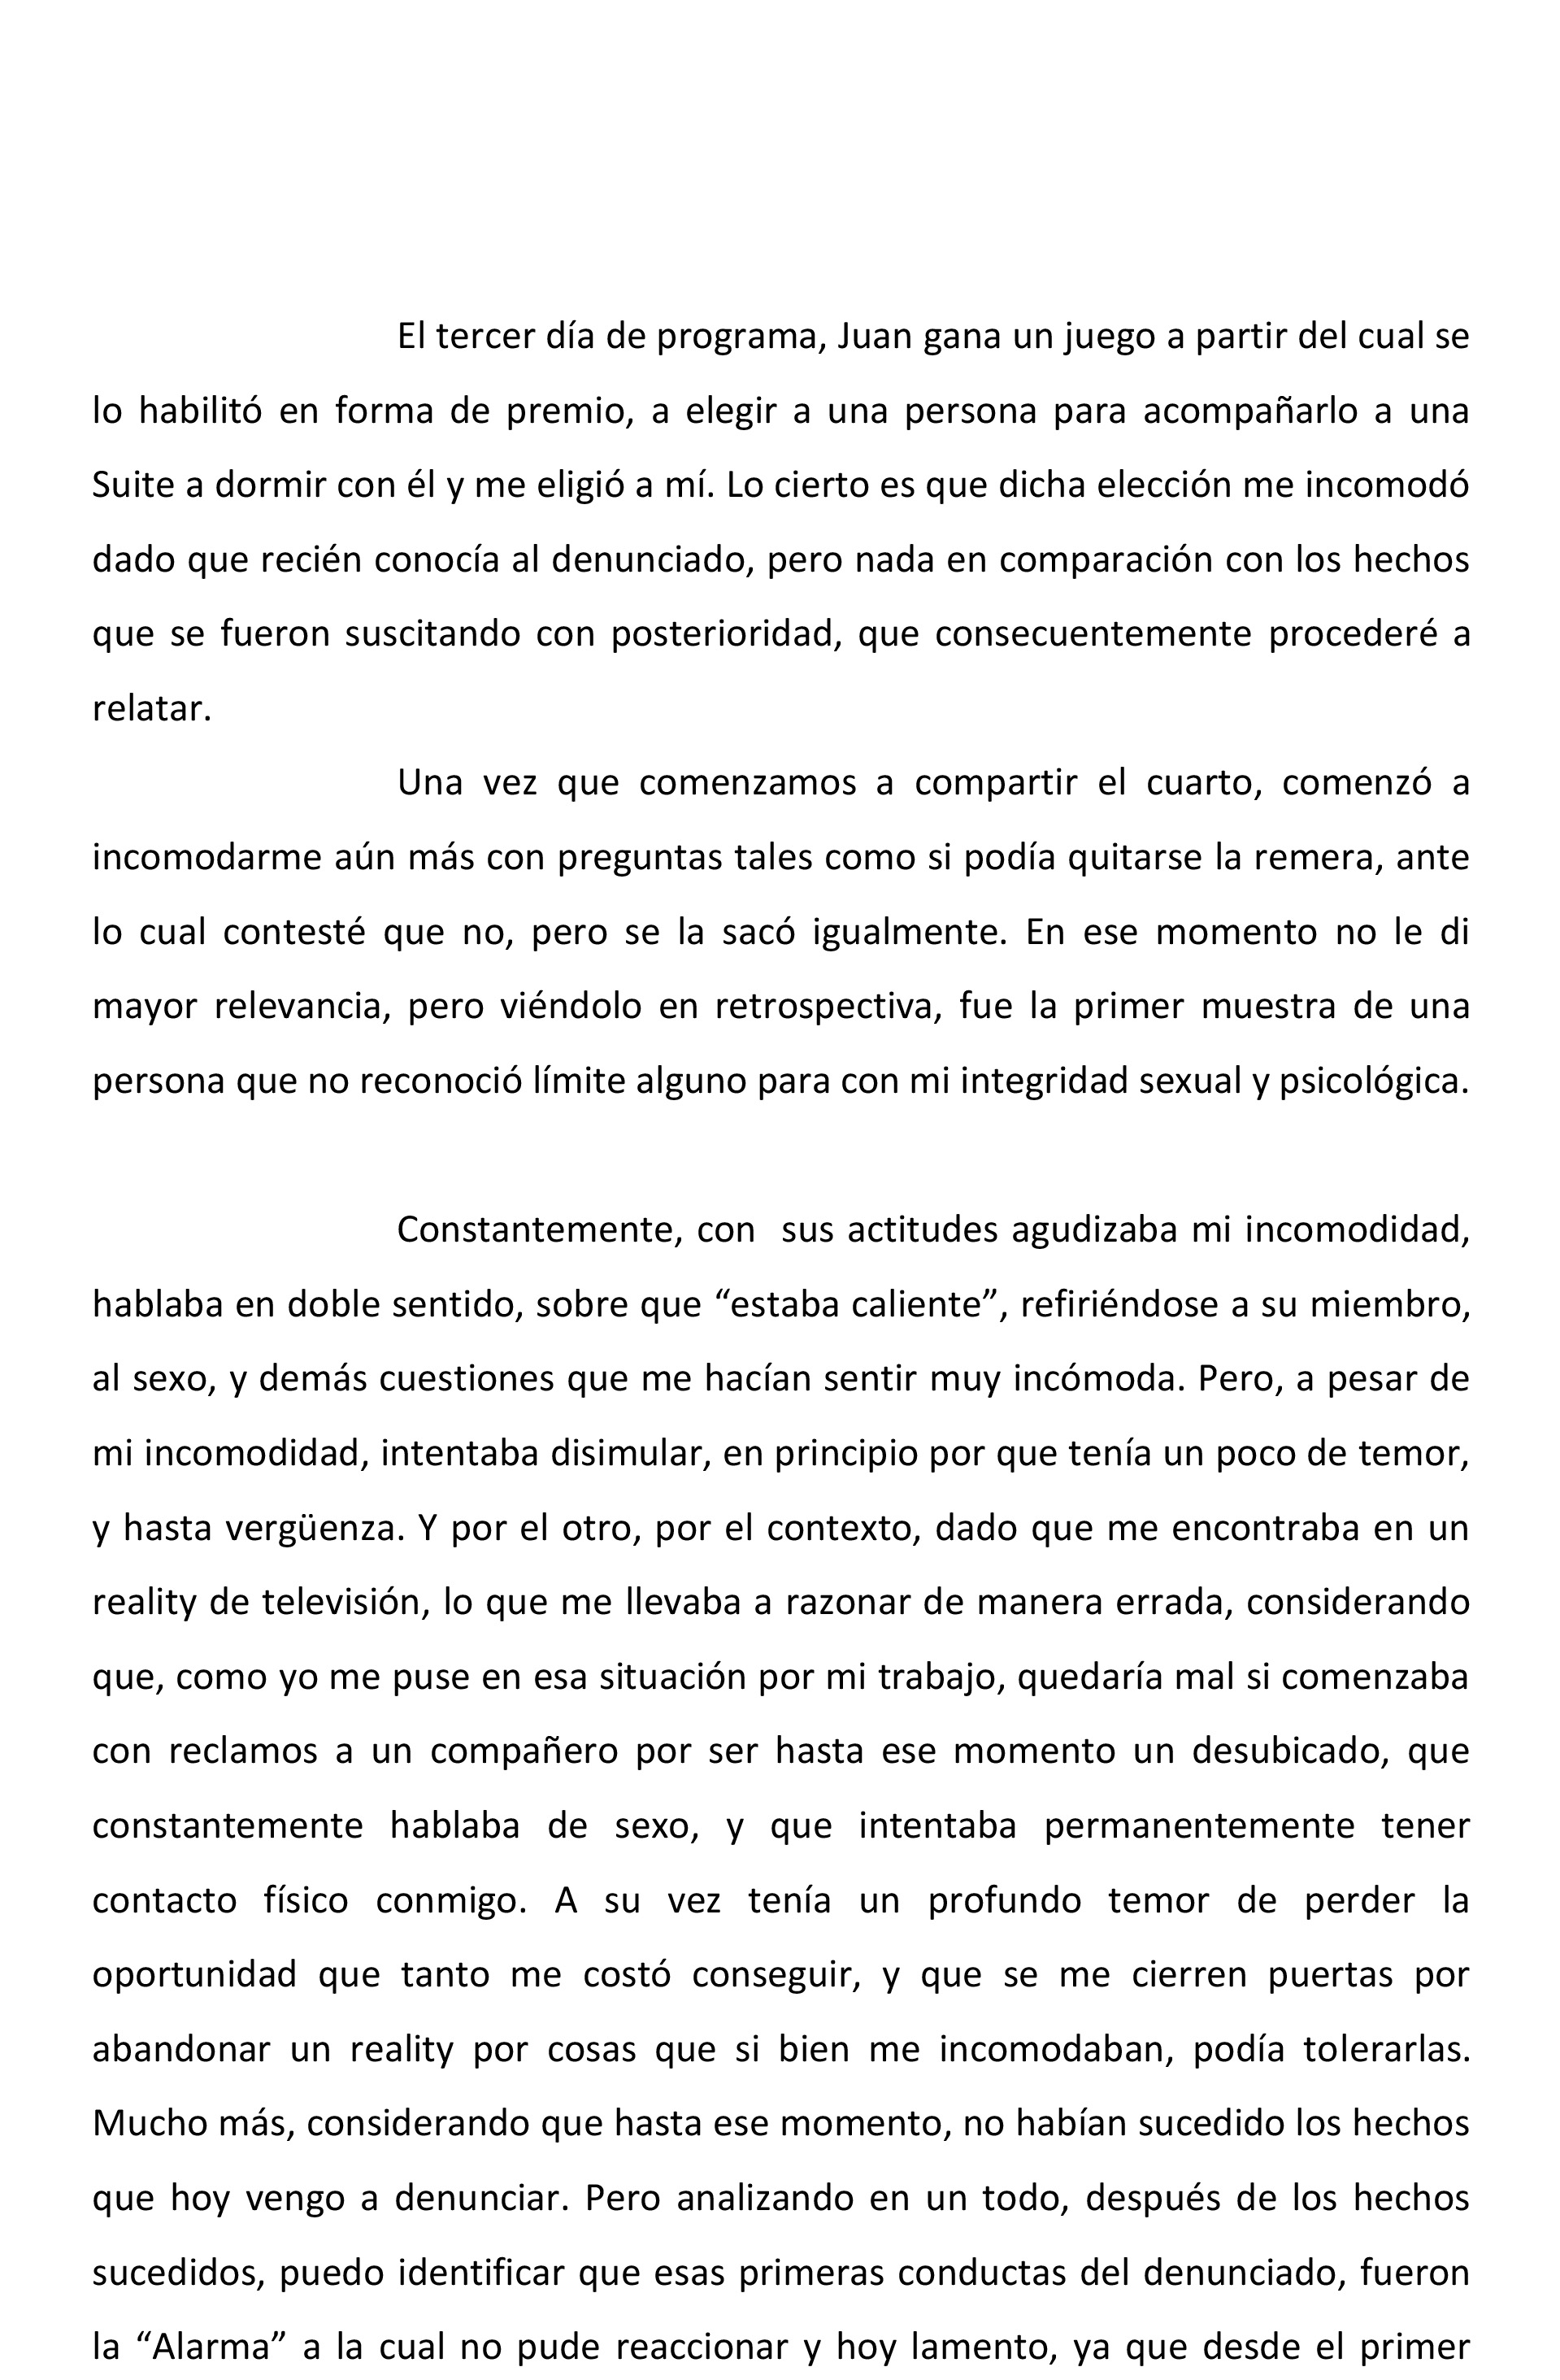 La denuncia judicial de Flor Moyano contra Juani Martino, hoja 3